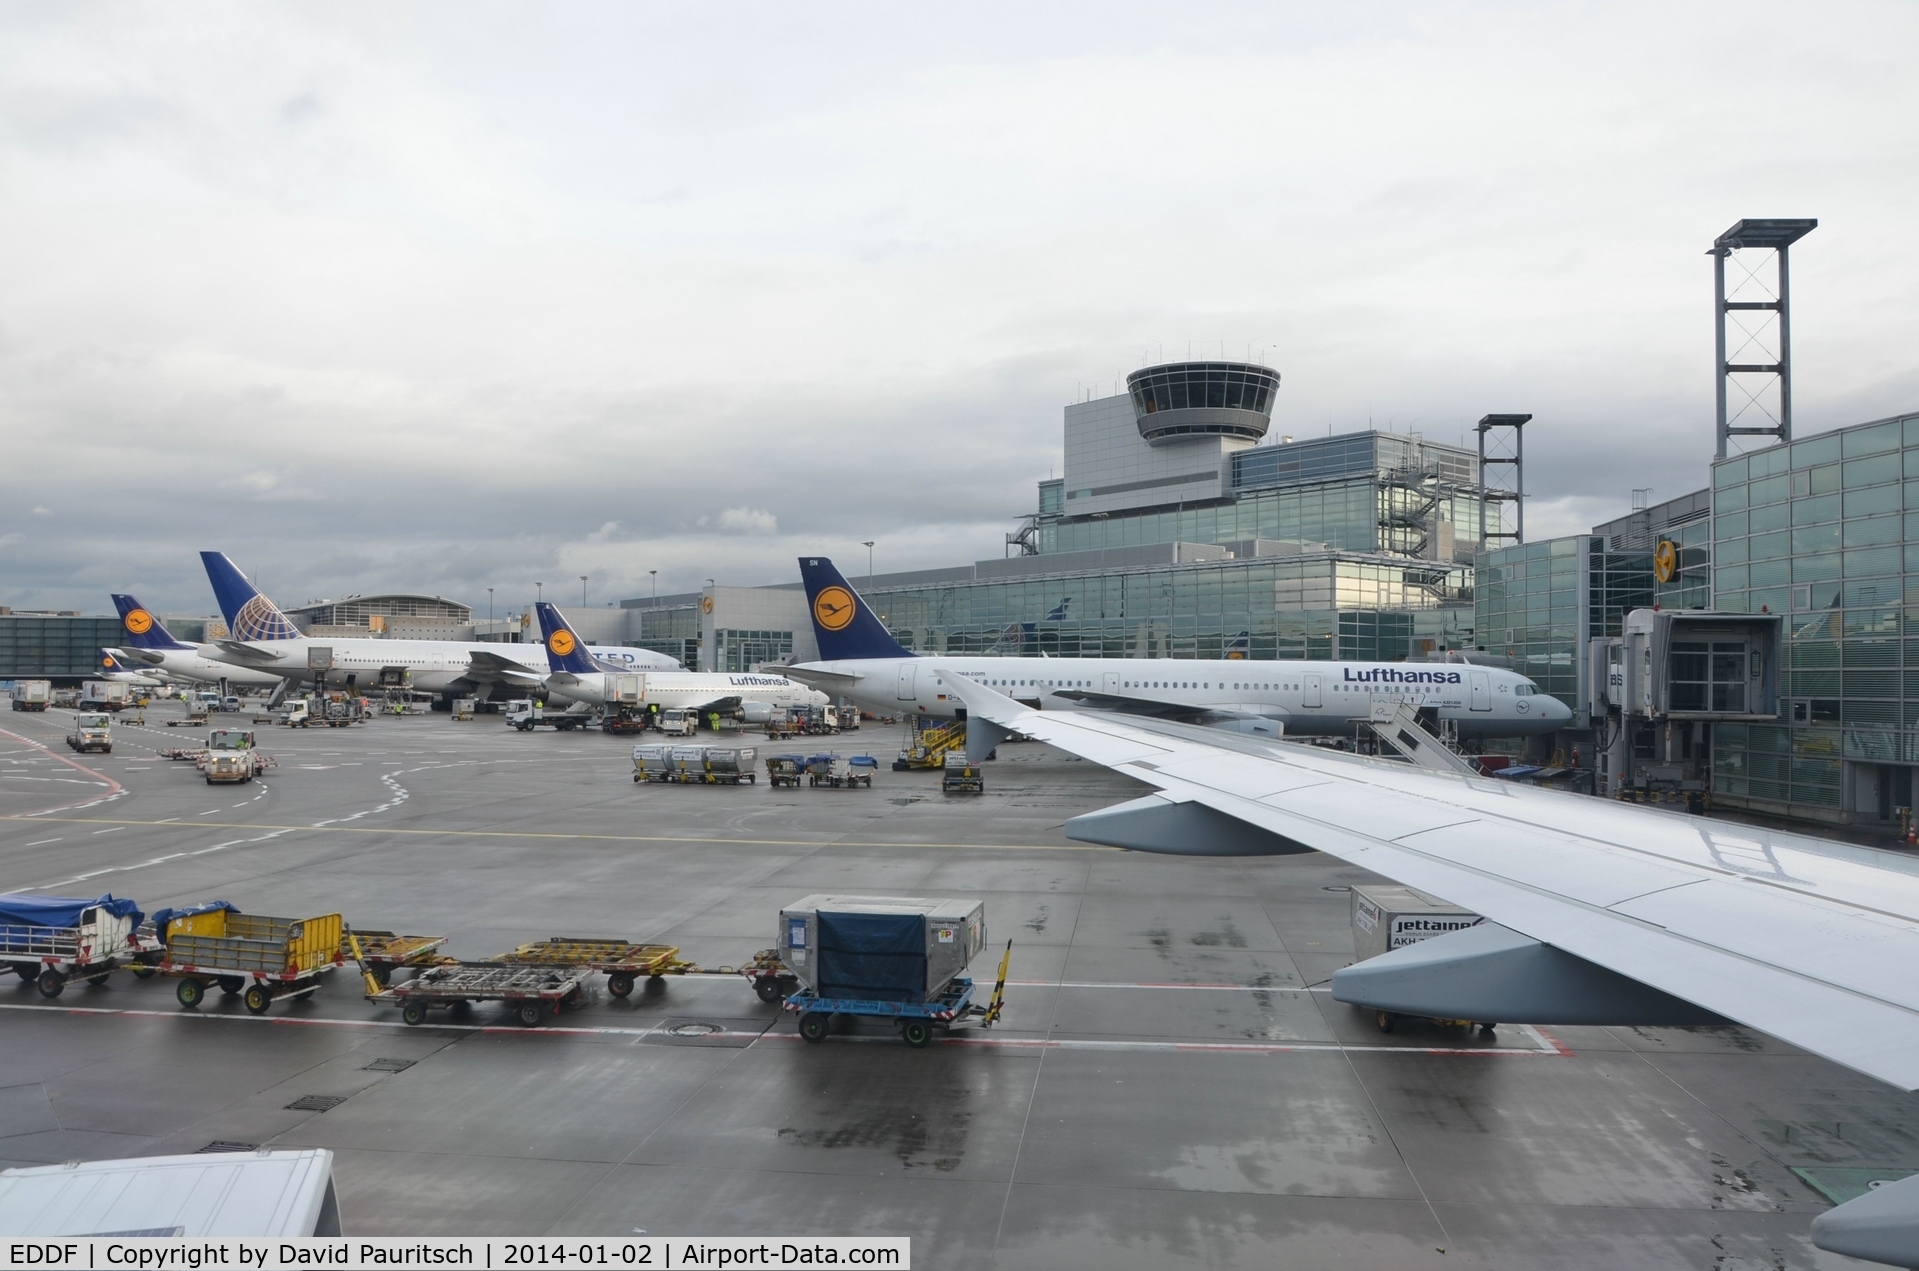 Frankfurt International Airport, Frankfurt am Main Germany (EDDF) - Frankfurt Airport